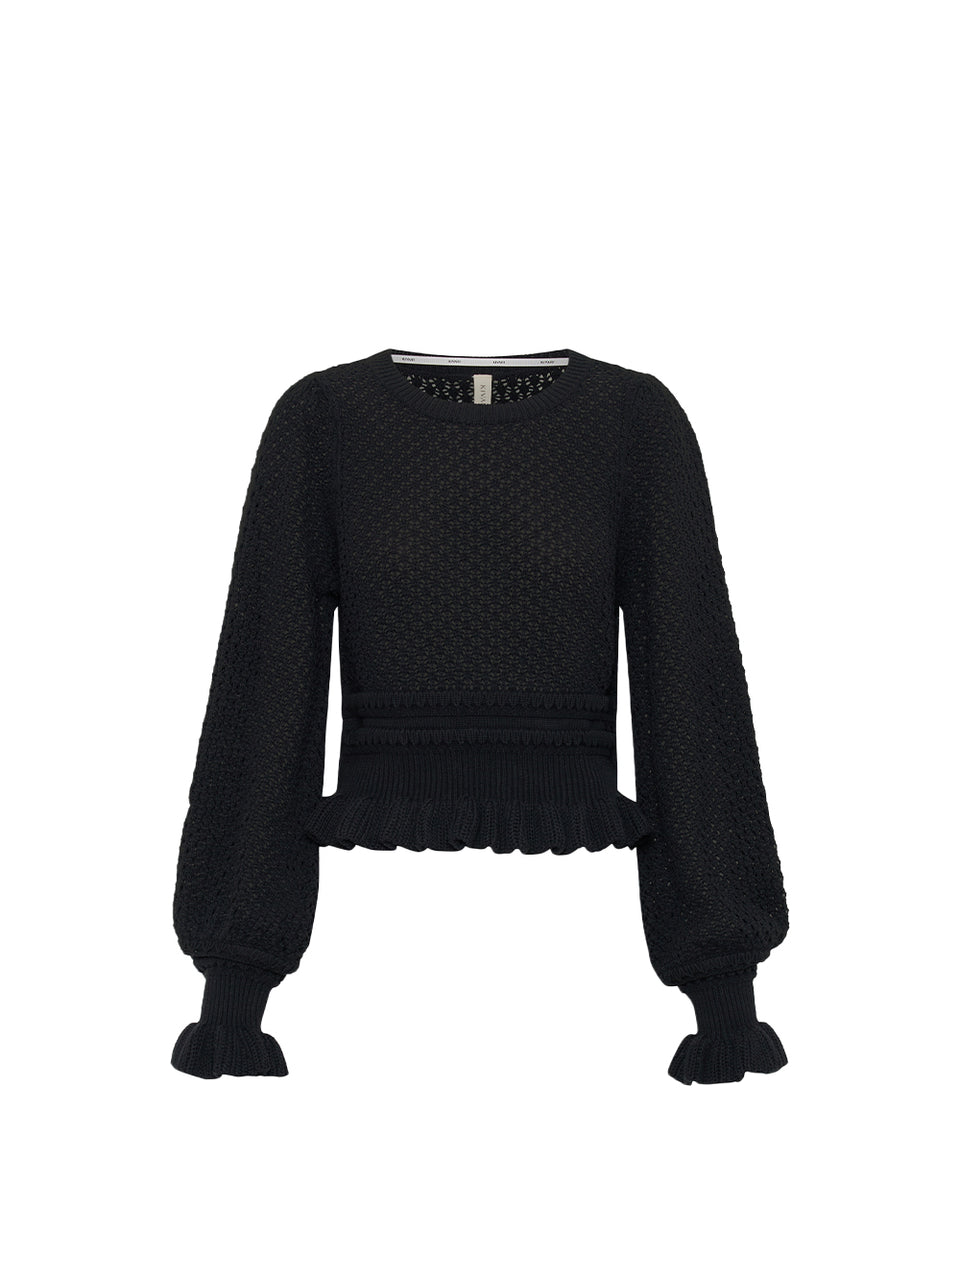 Rafaela Knit Top KIVARI | Black knit top